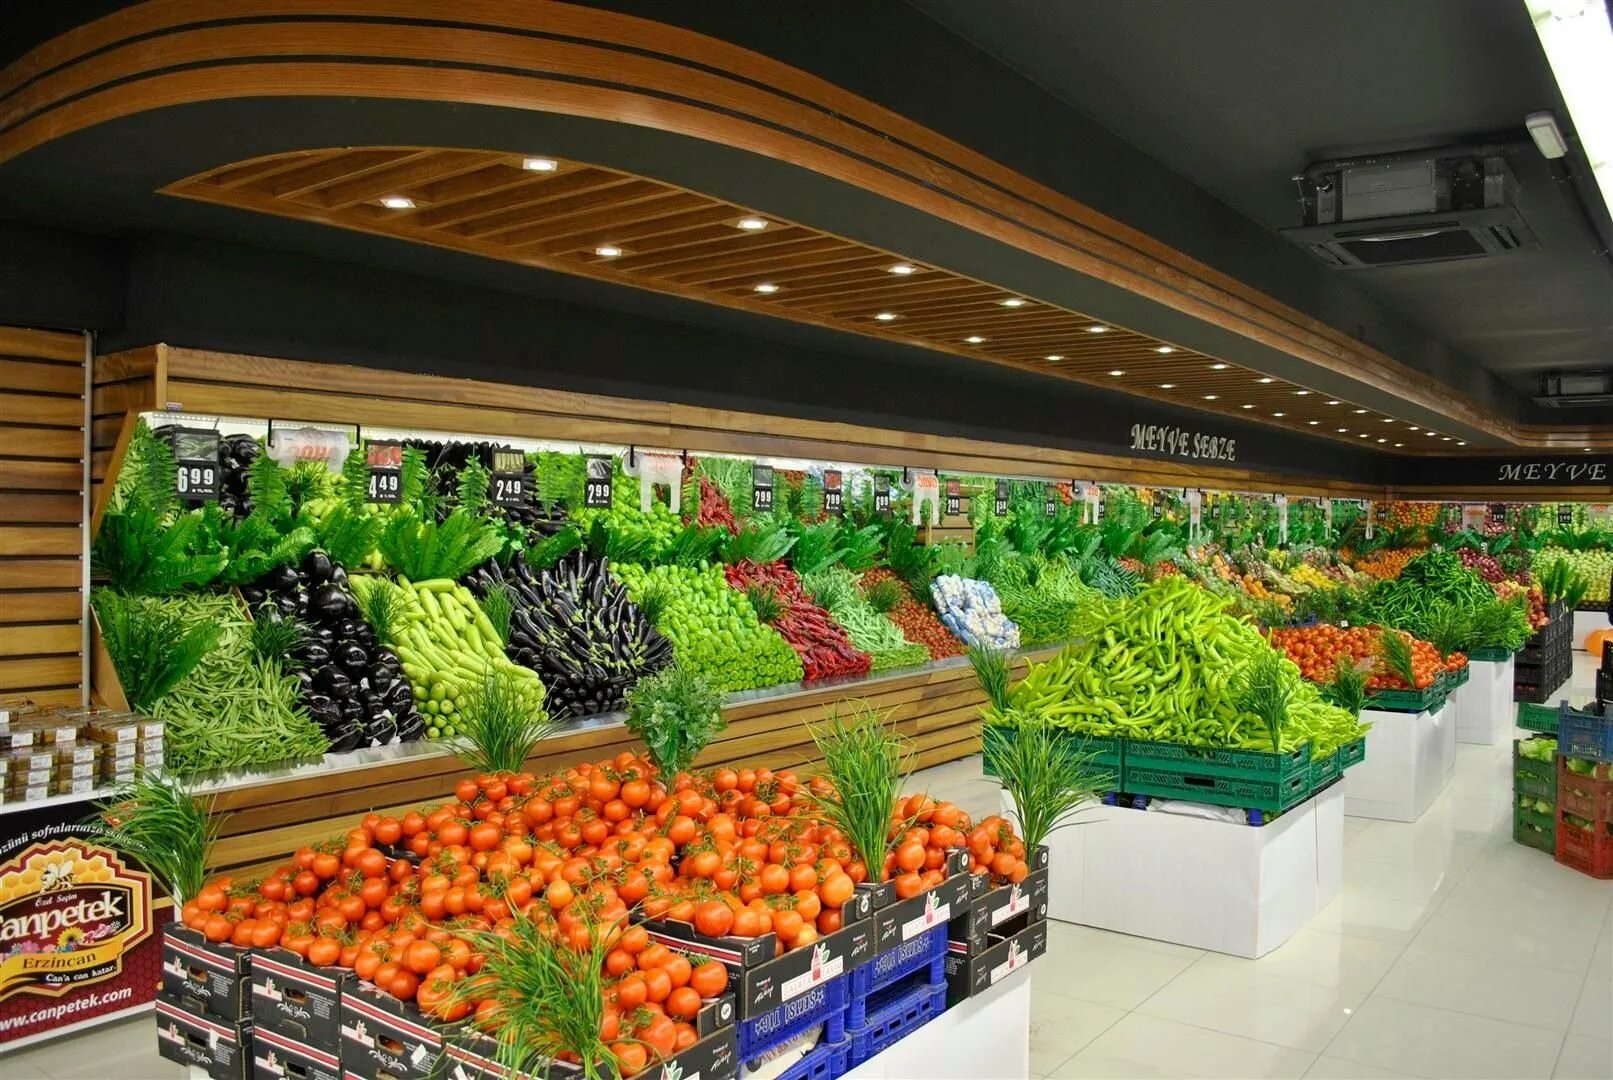 Vegetables shop. Manav Турция. Овощной магазин. Витрина овощного магазина. Прилавок с овощами и фруктами.